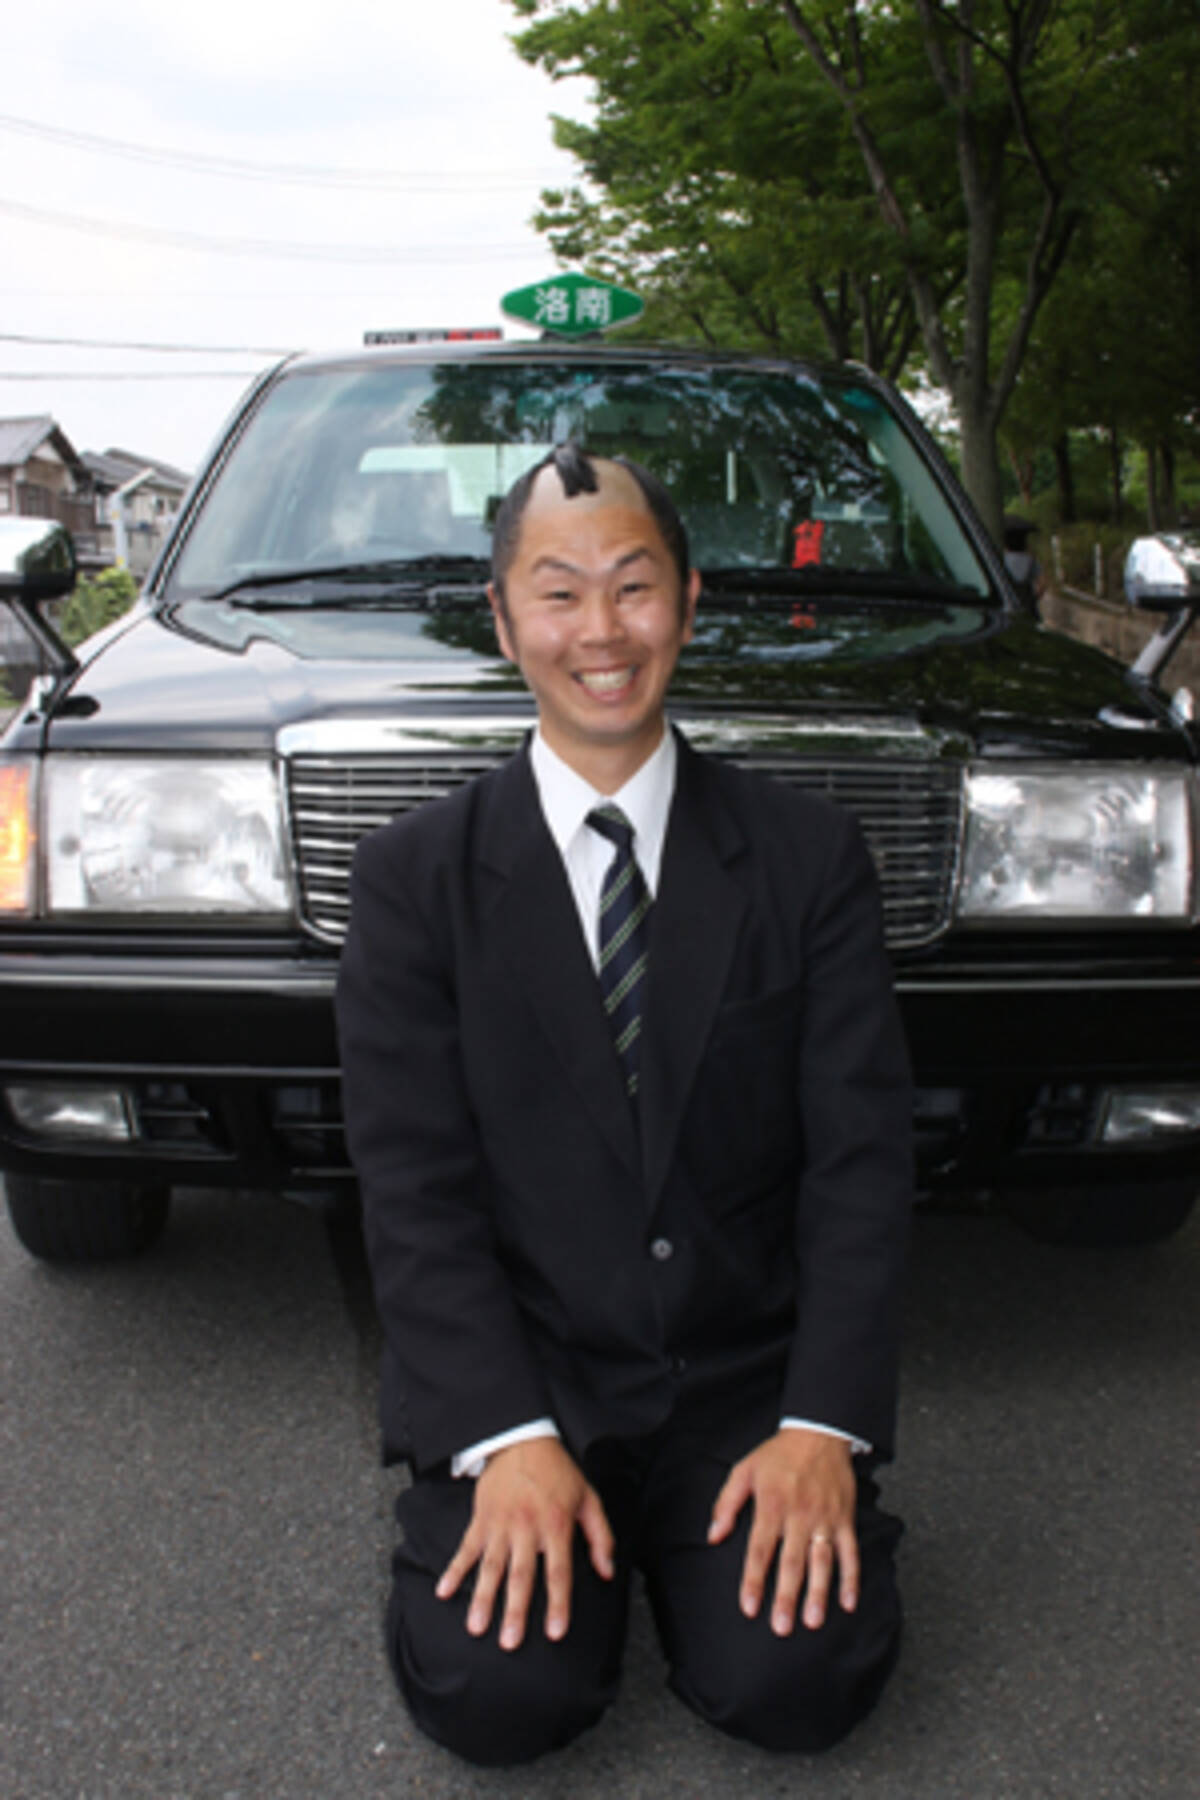 京都で大人気 ちょんまげタクシー運転手 の人知れぬ苦労 15年6月26日 エキサイトニュース